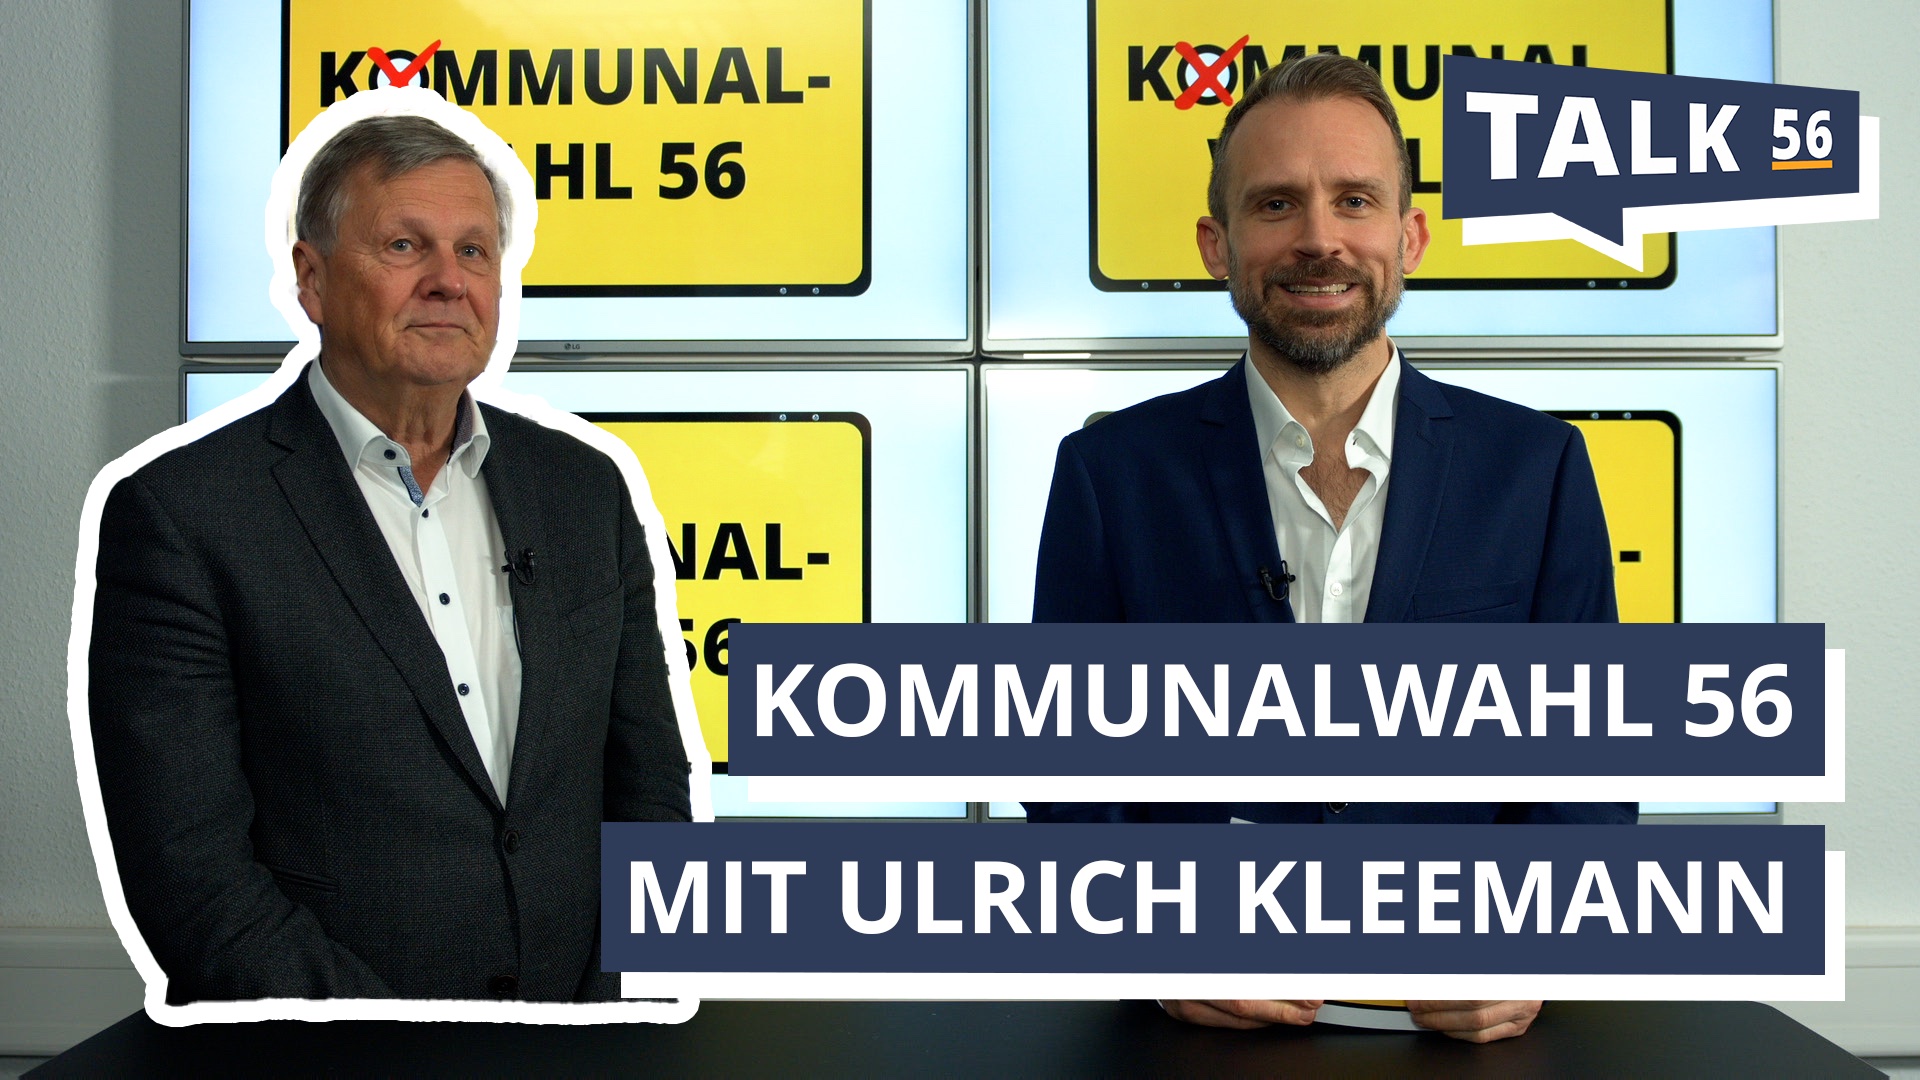 Kommunalwahl 56: Grünen-Politiker Ulrich Kleemann zu Gast